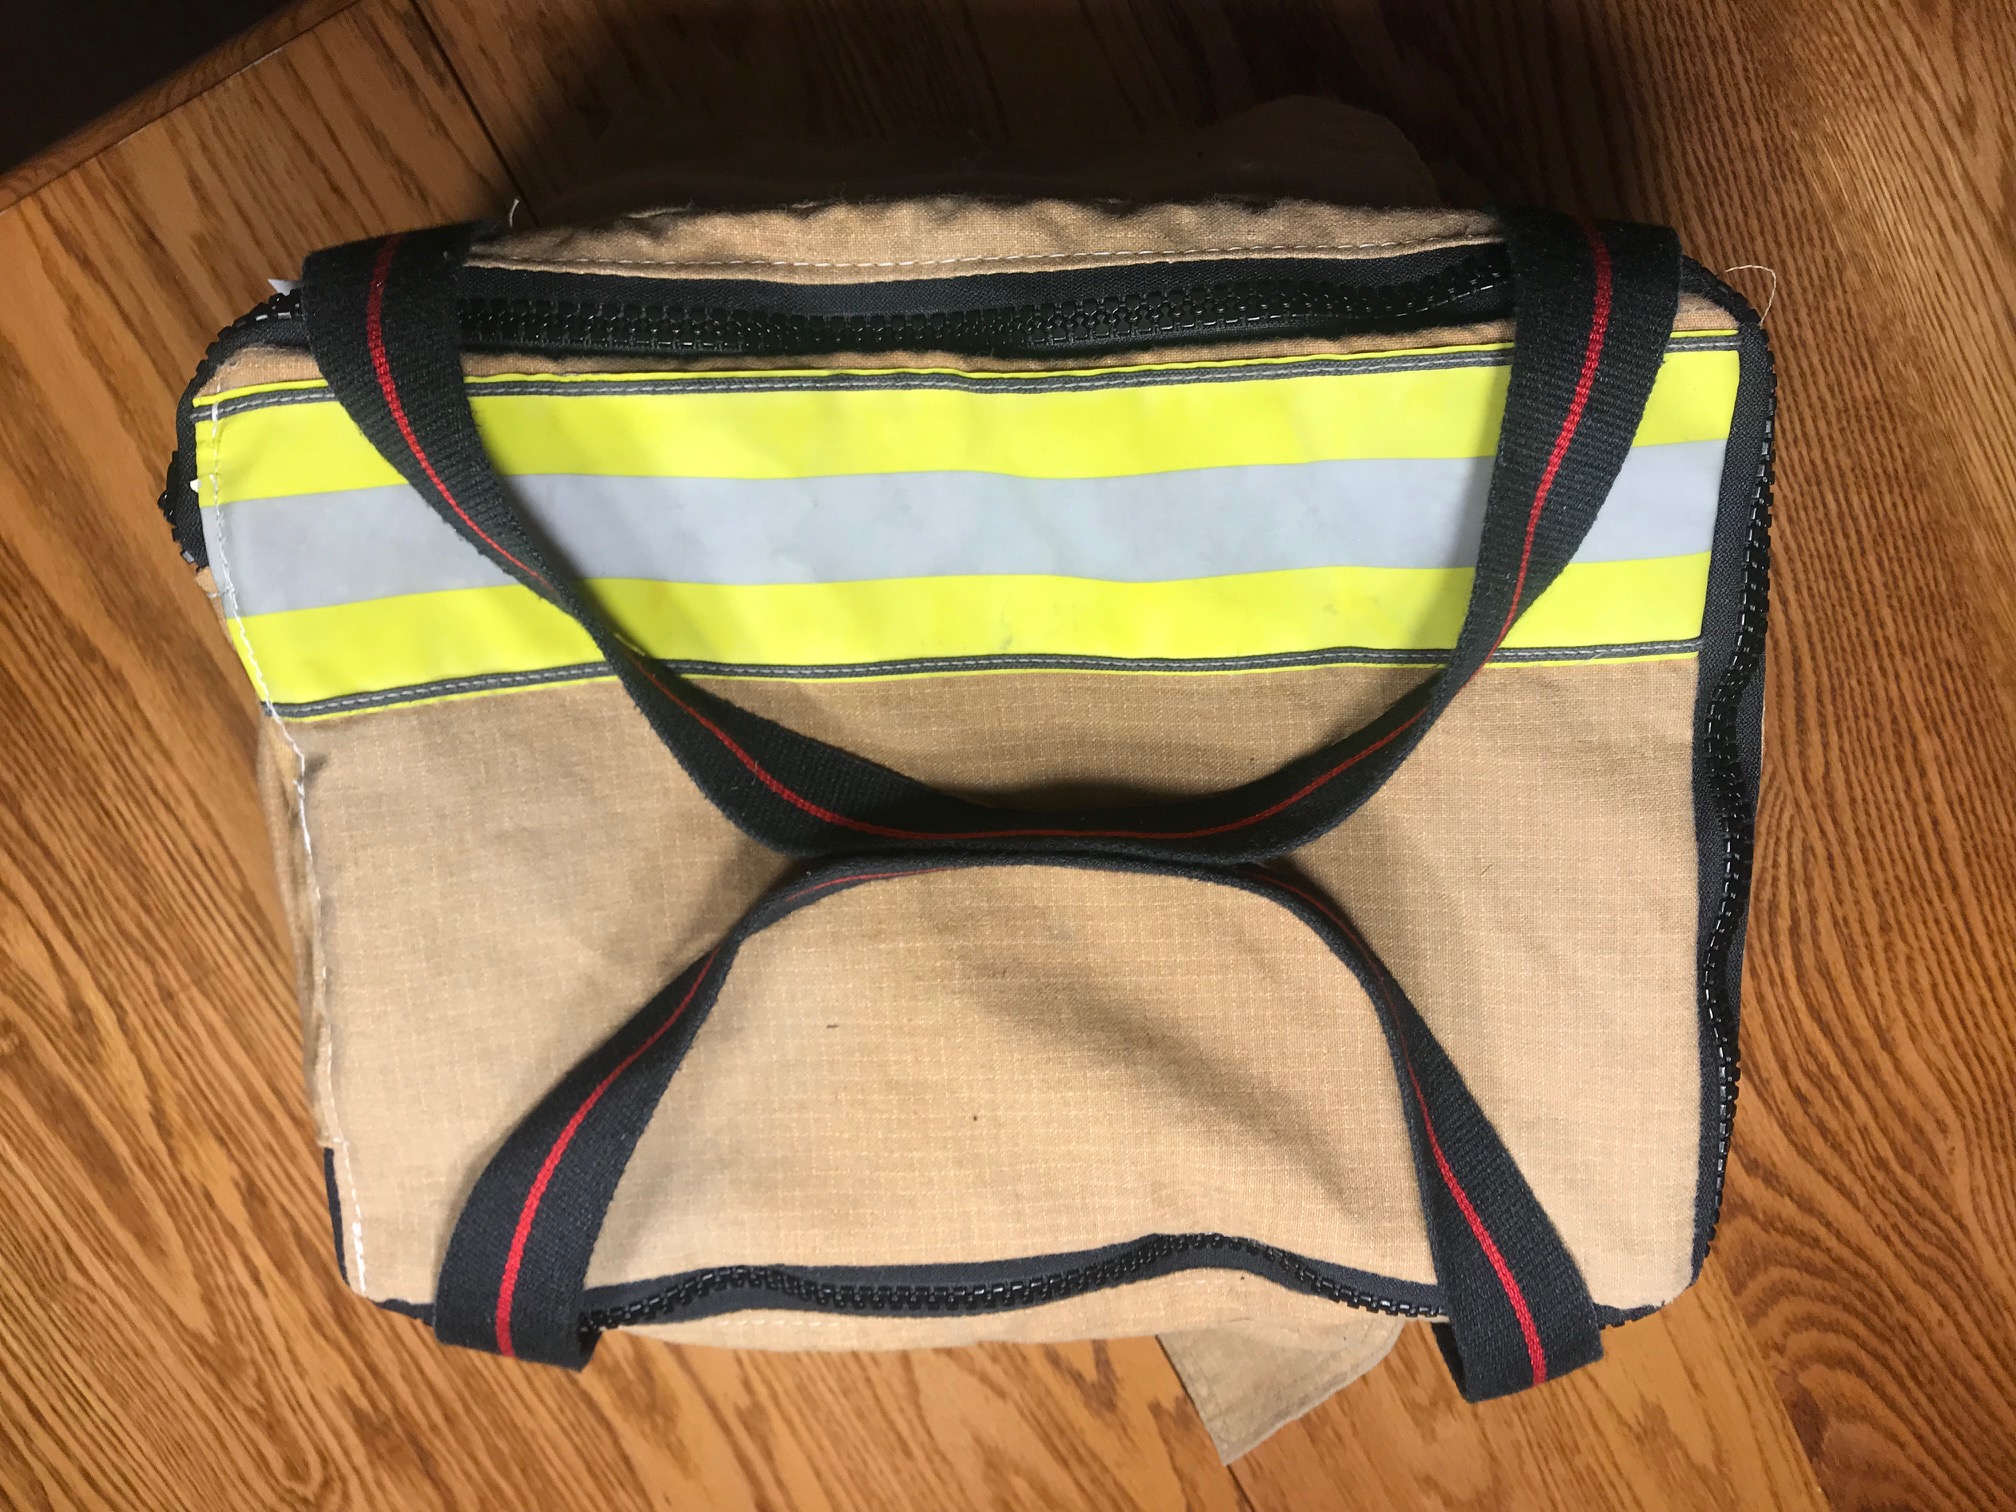 Shore Fire Gear Gadget Bag | Shore Fire Gear